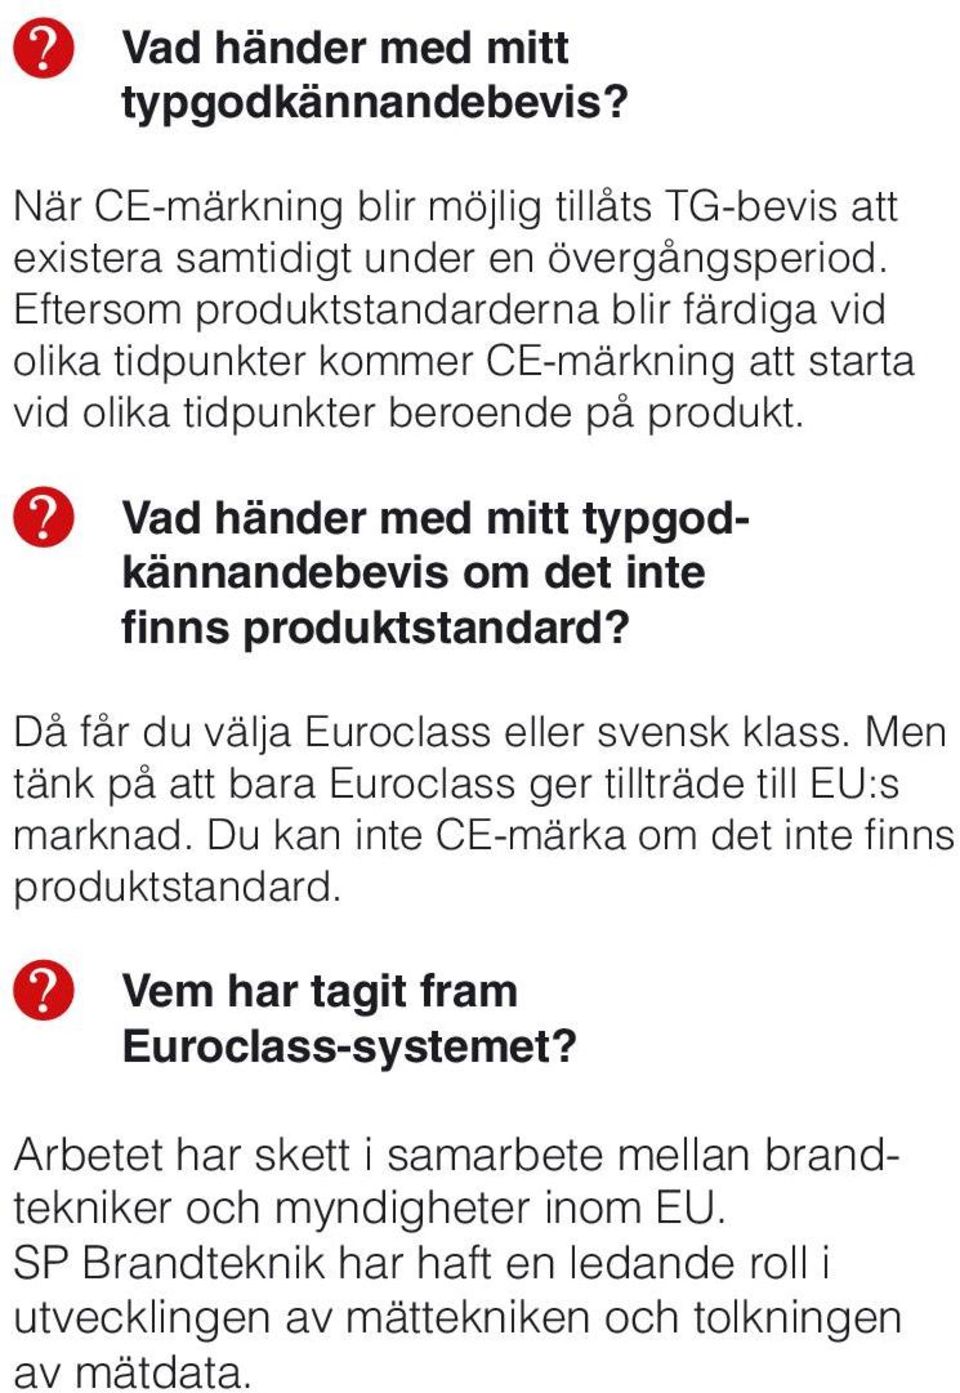 Vad händer med mitt typgodkännandebevis om det inte finns produktstandard? Då får du välja Euroclass eller svensk klass.